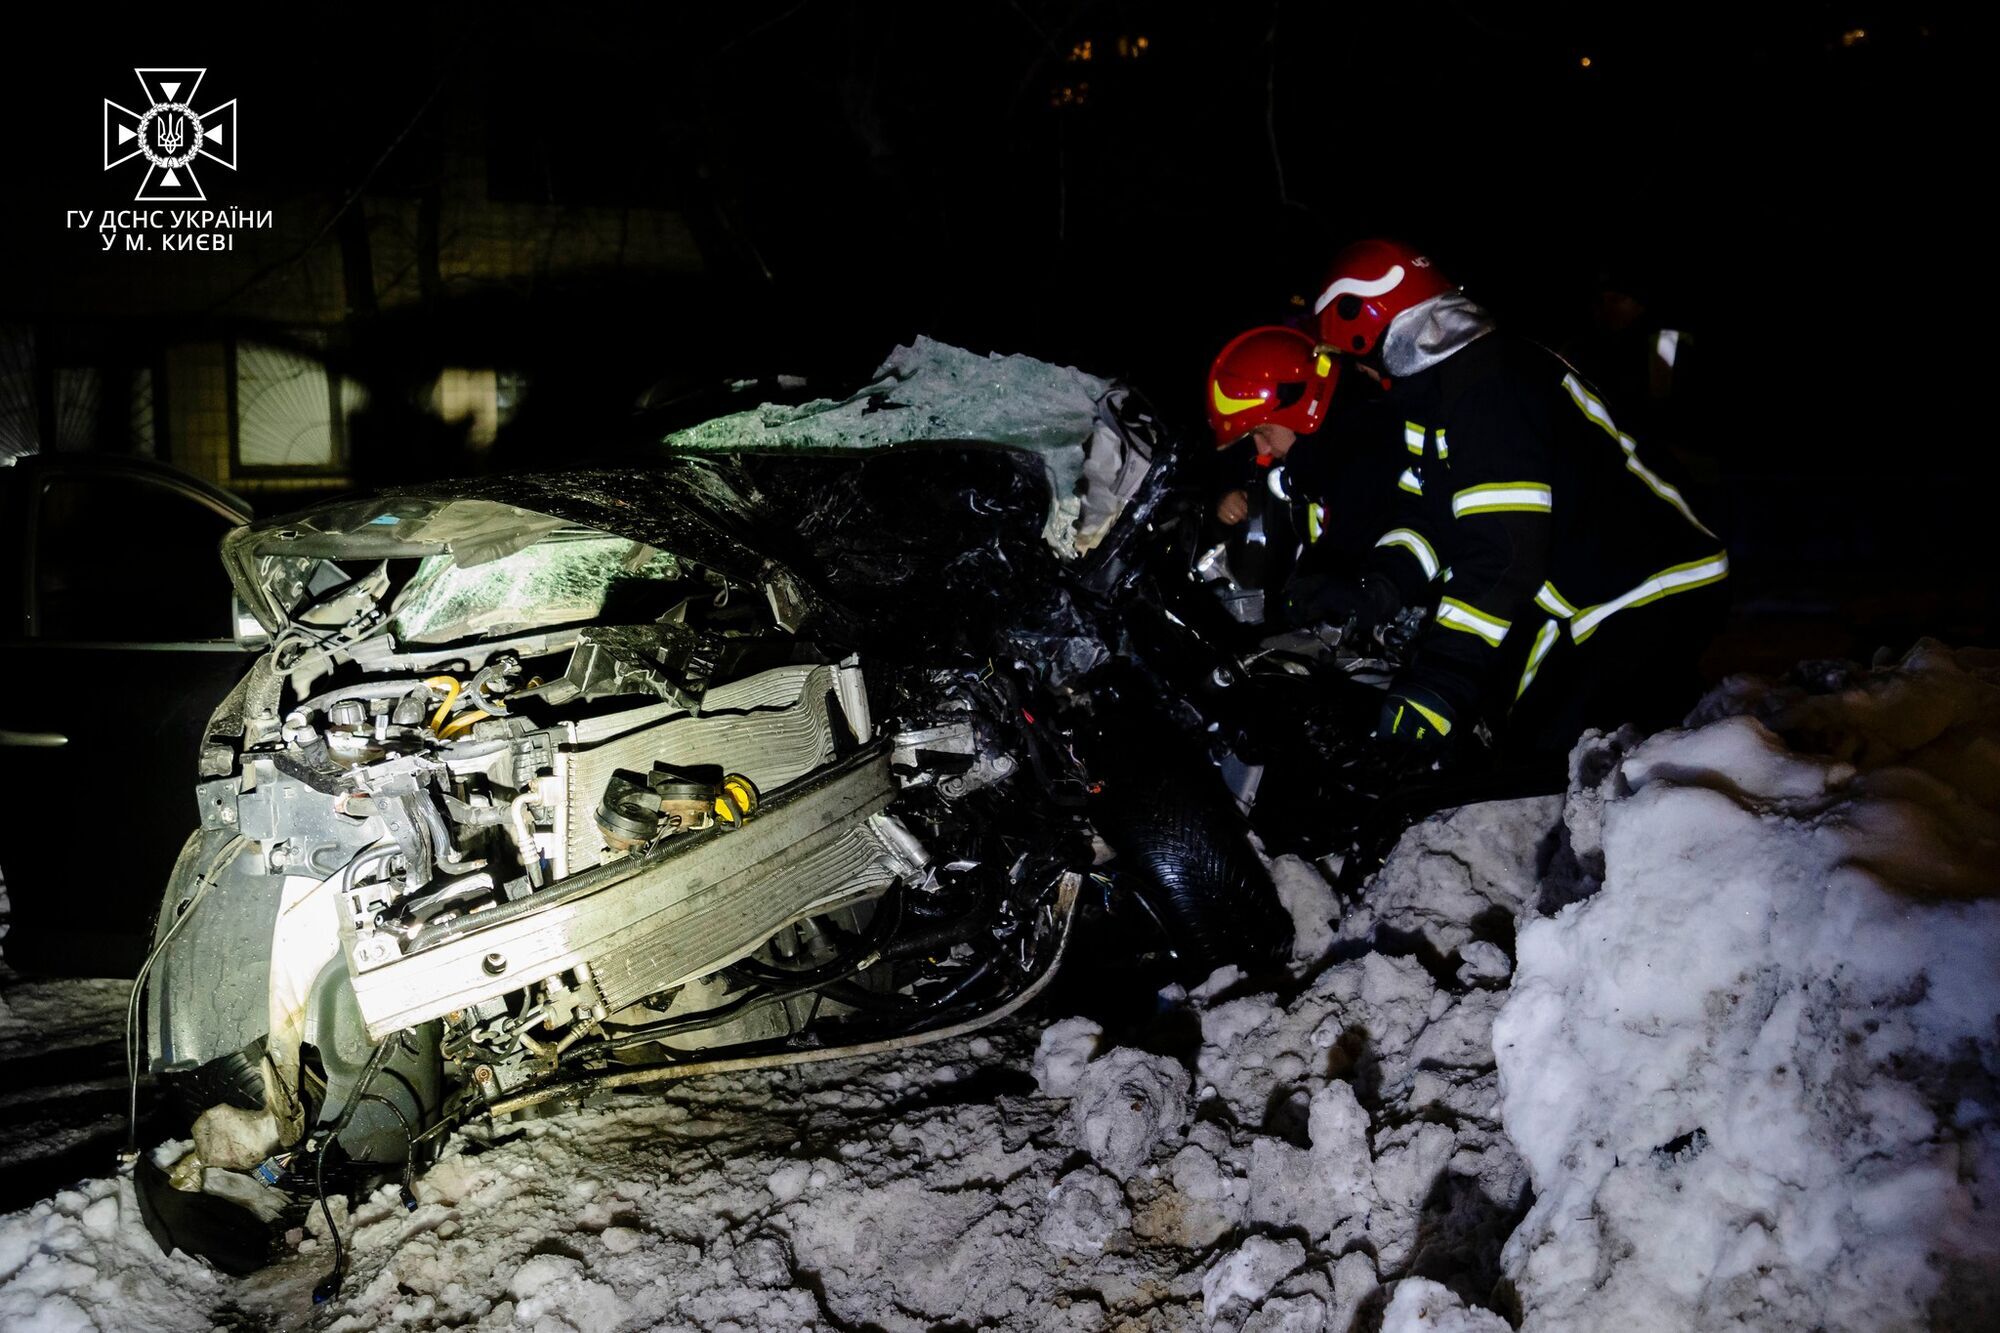 На Печерске в Киеве водитель-иностранец под хмельком врезался в другой автомобиль: есть погибшие. Фото